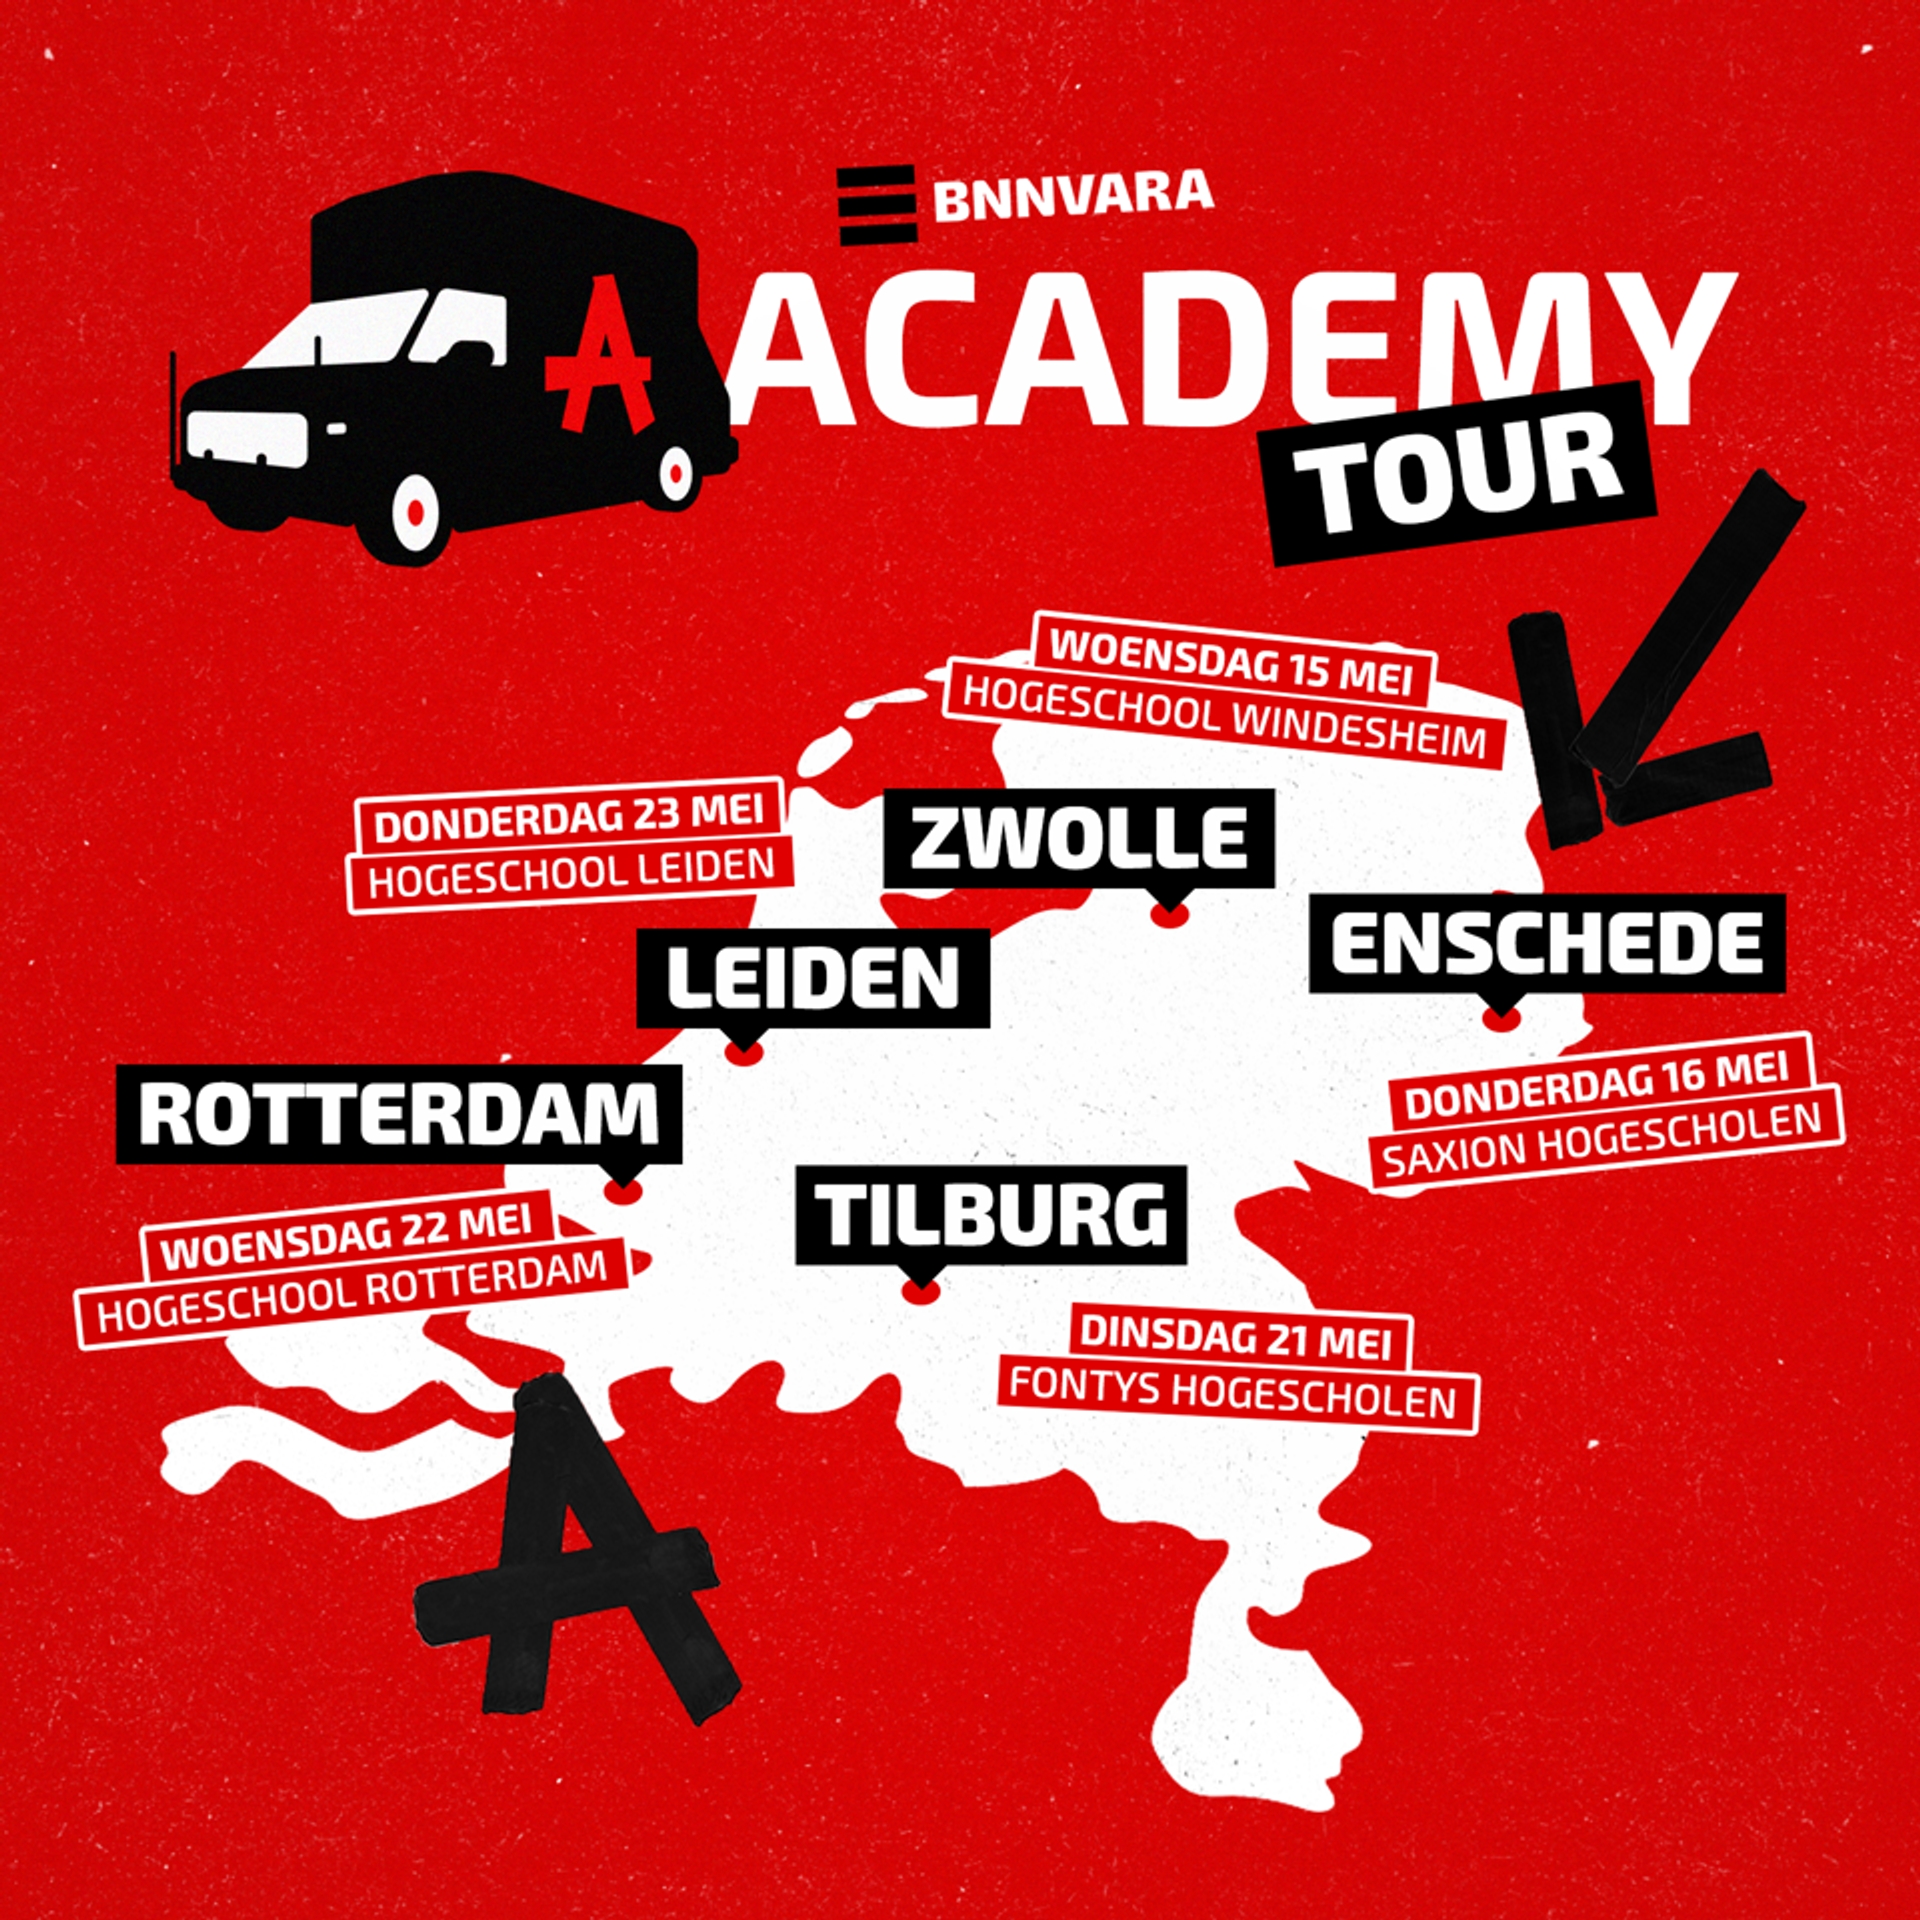 BNNVARA Academy bustour 2019